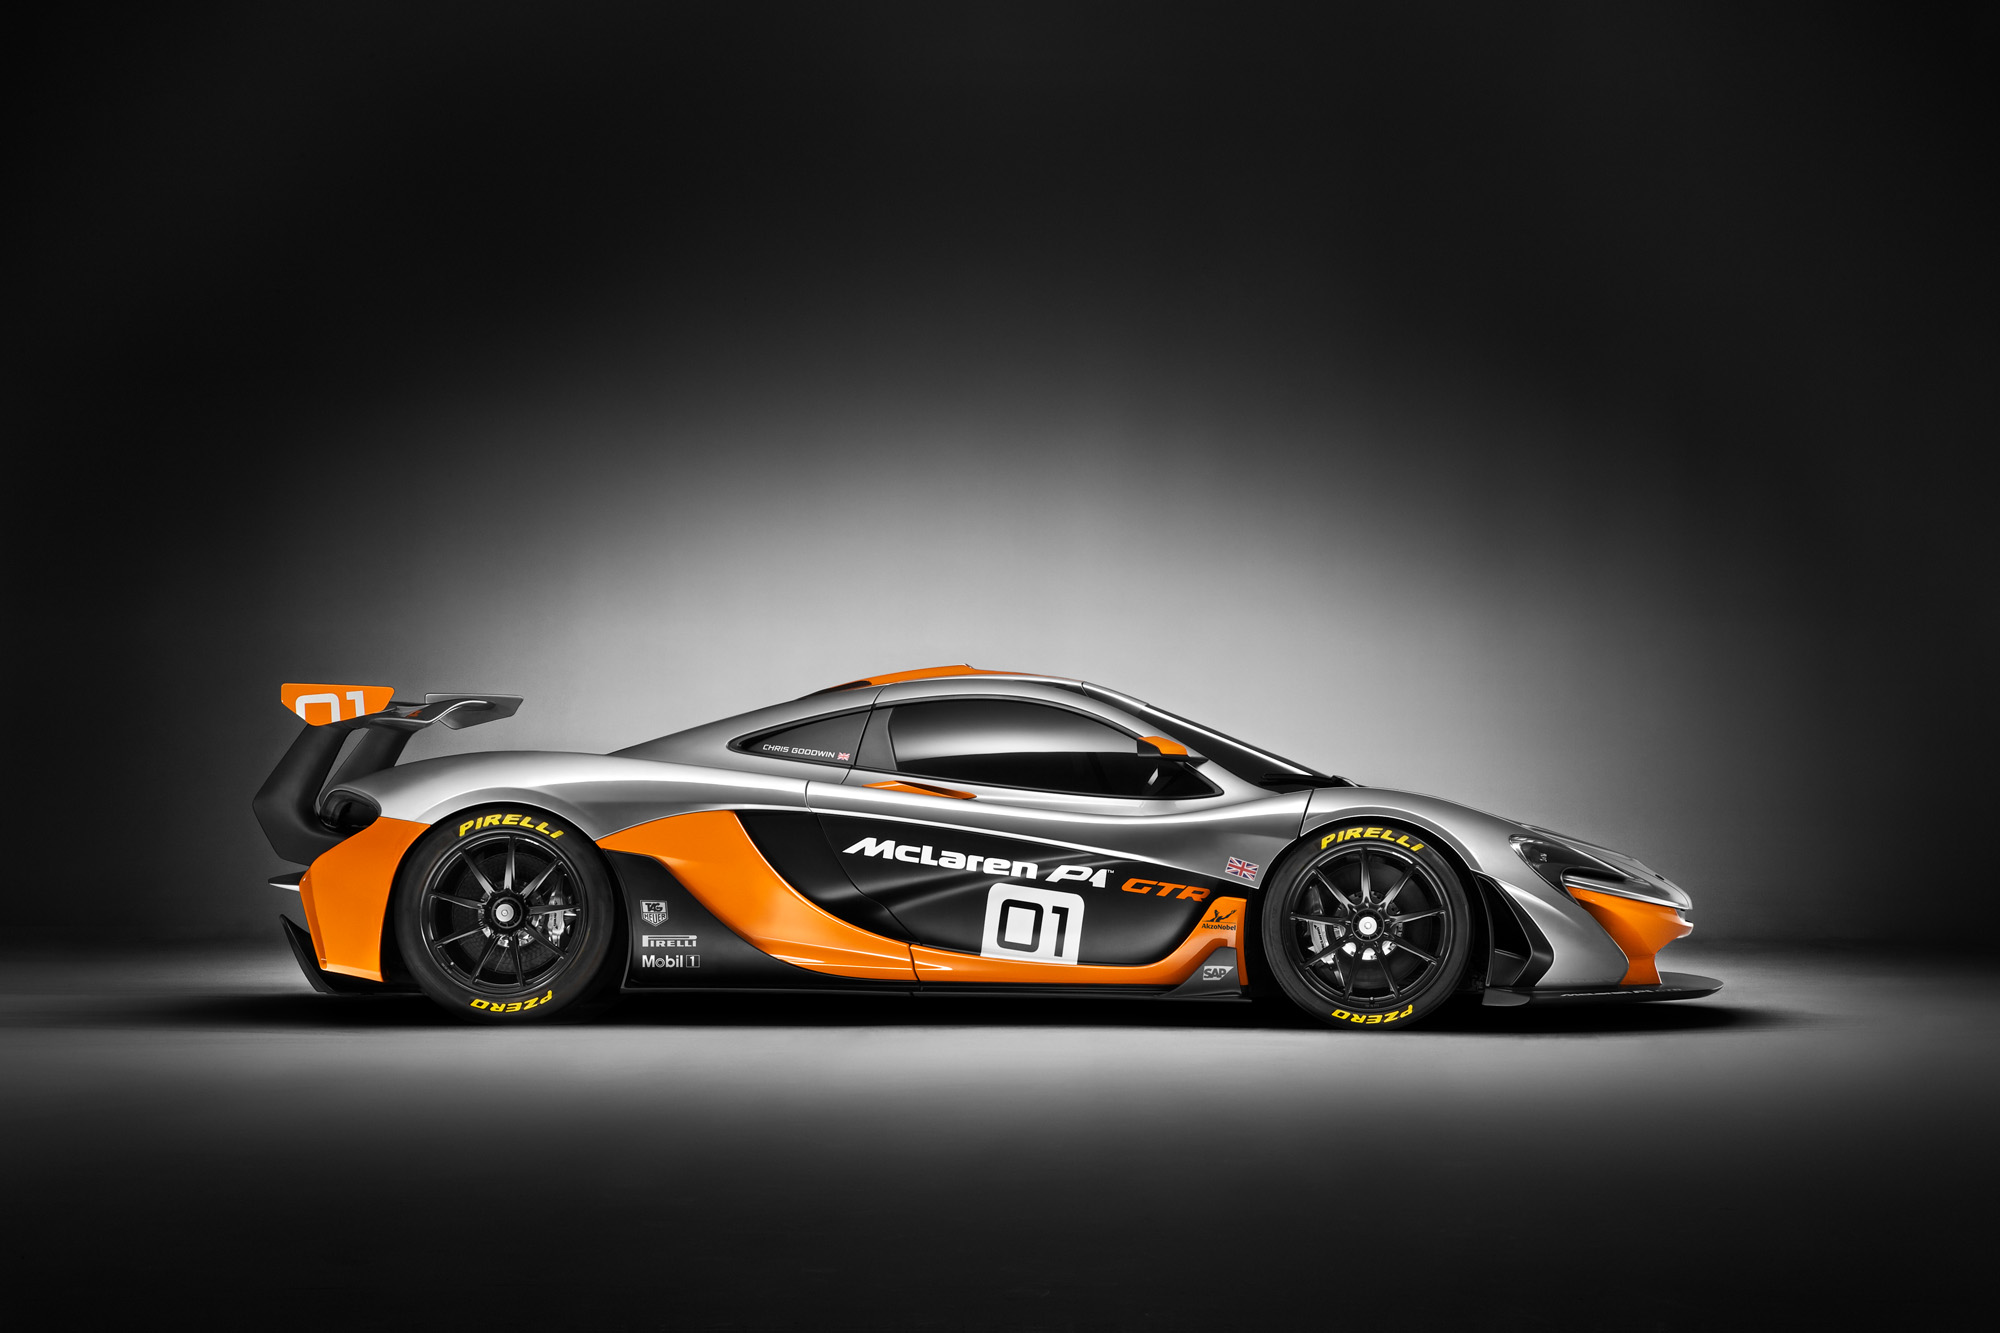 Flache Linie für eine filigrane Aerodynamik beim McLaren P1 GTR design concept